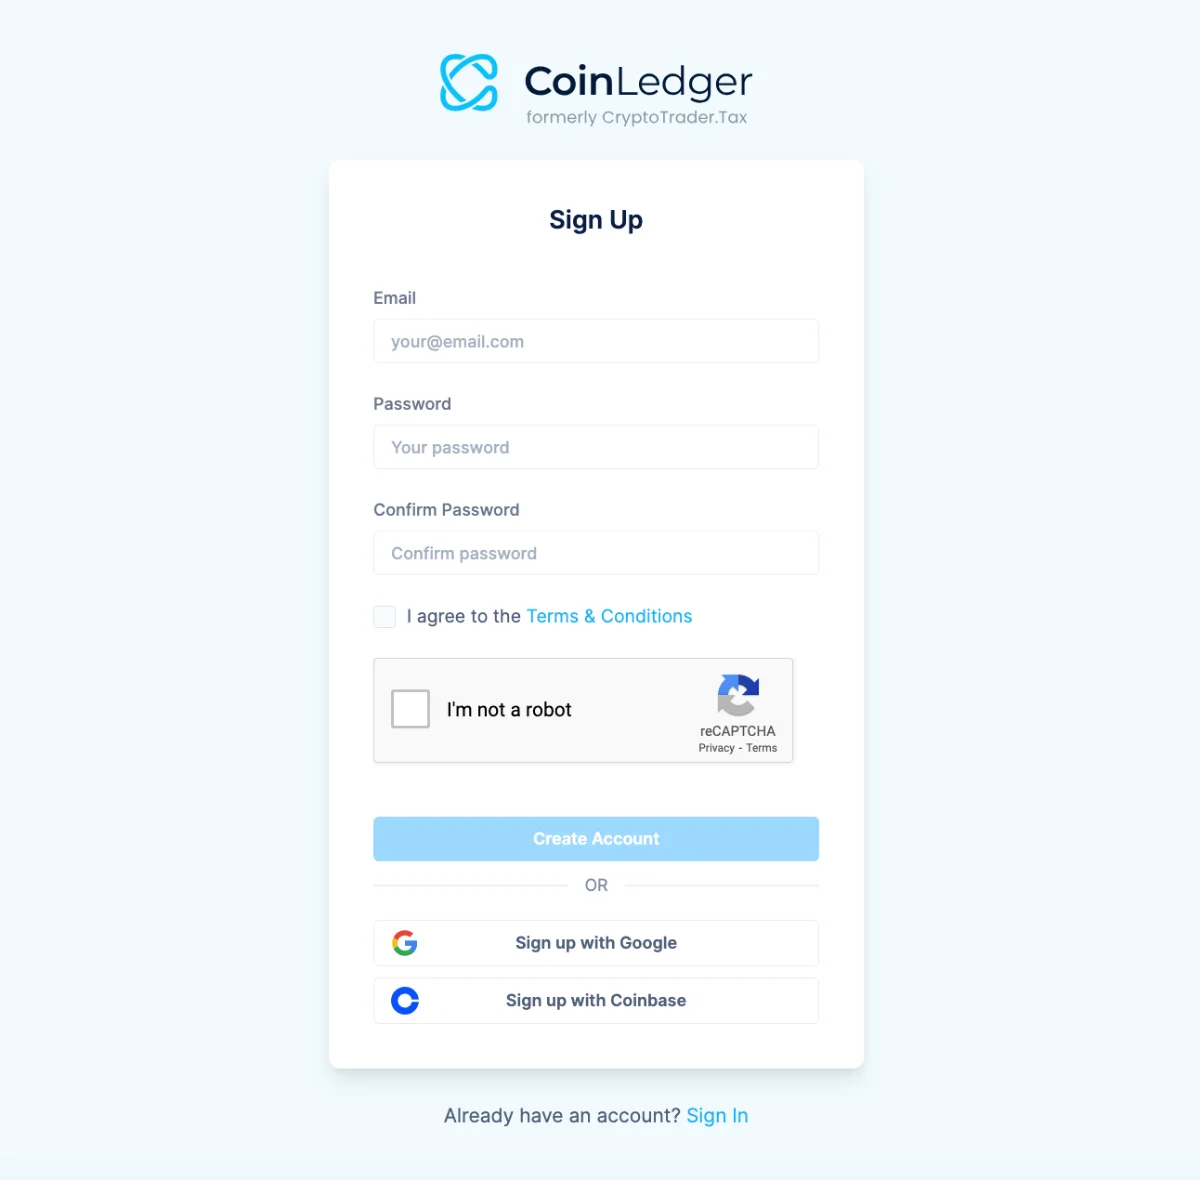 Create an account on CoinLedger